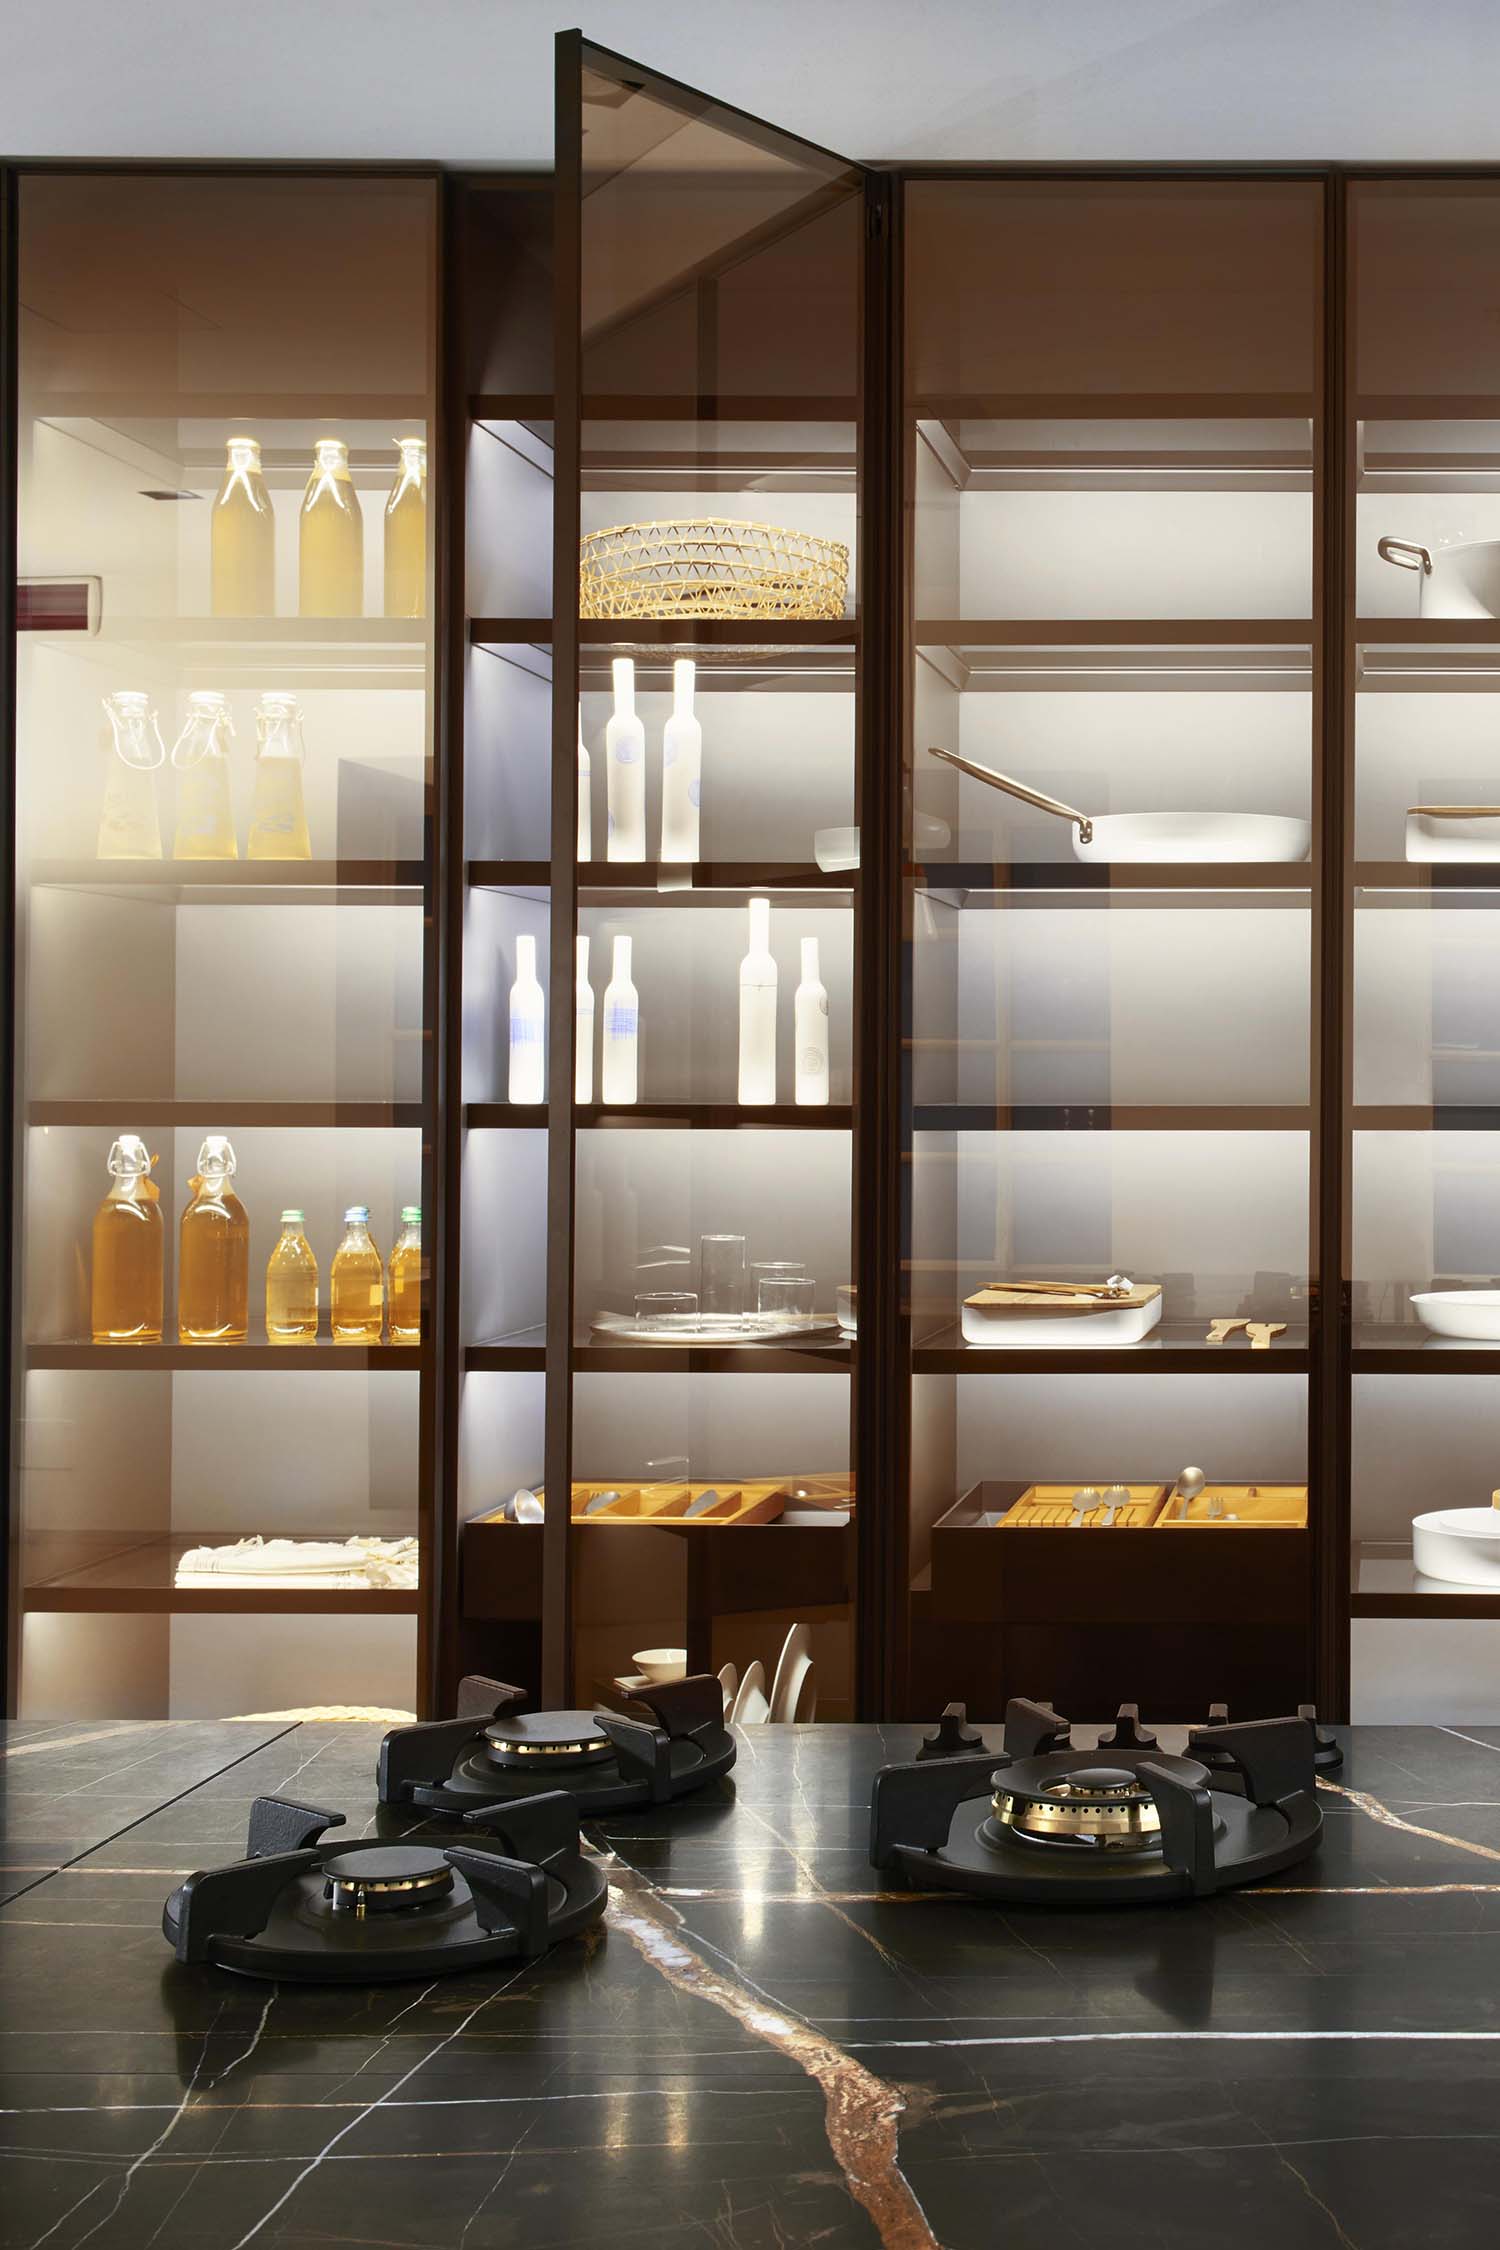 Luxury kitchens in Marylebone, London. Kitchen design by Krieder studio UK